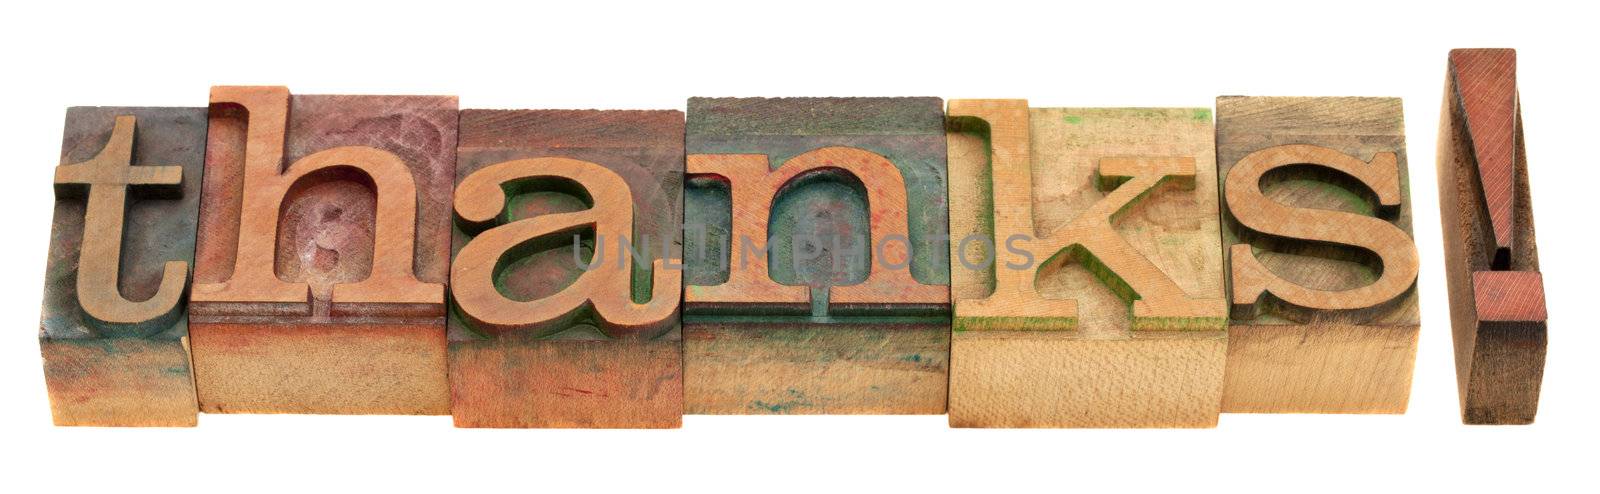 thanks - word in letterpress type by PixelsAway